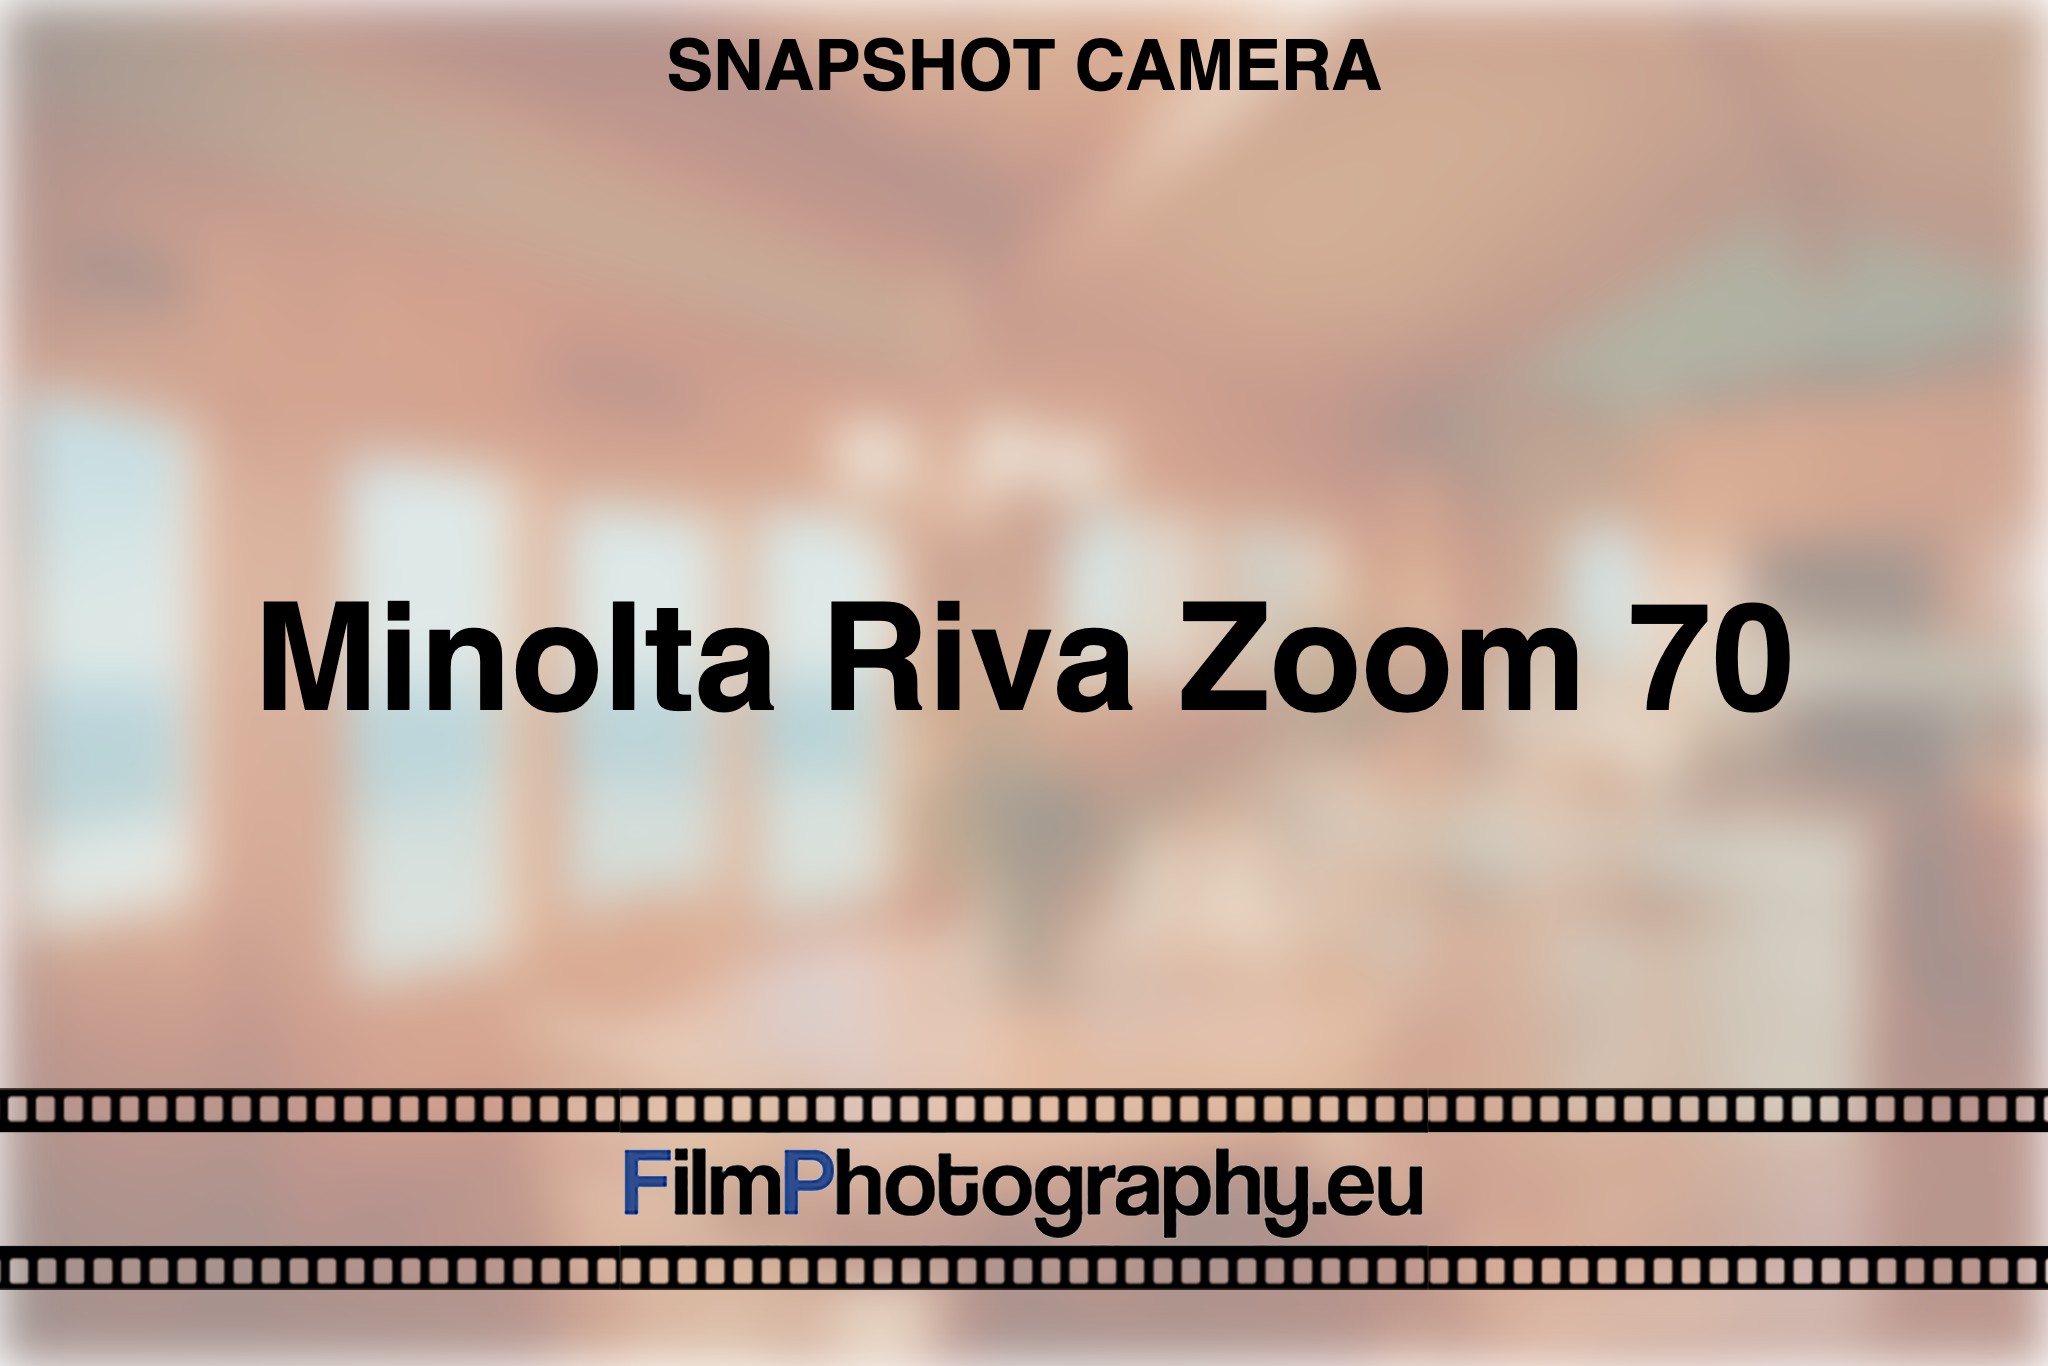 minolta-riva-zoom-70-snapshot-camera-bnv